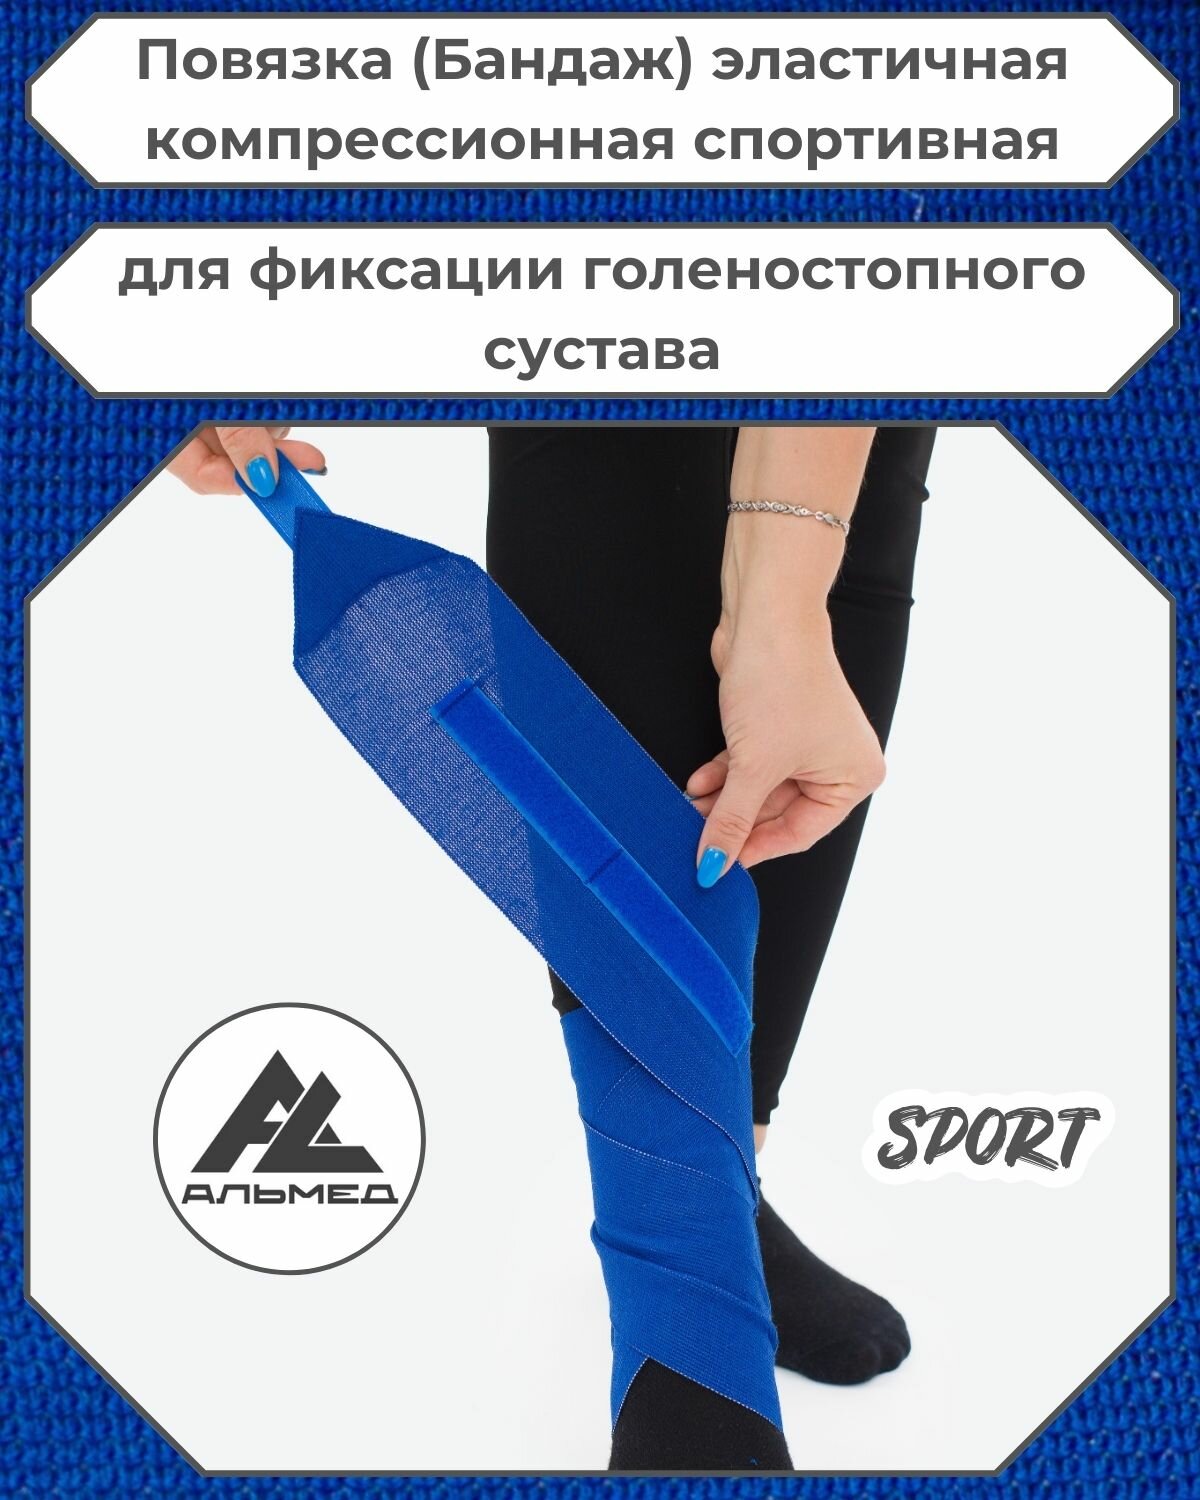 Повязка(бандаж, фиксатор)спортивная эластичная компрессионная на голеностопный сустав, универсальная, застёжка «Velcro» 1,0 м *100мм, синий, с липучкой, Альмед